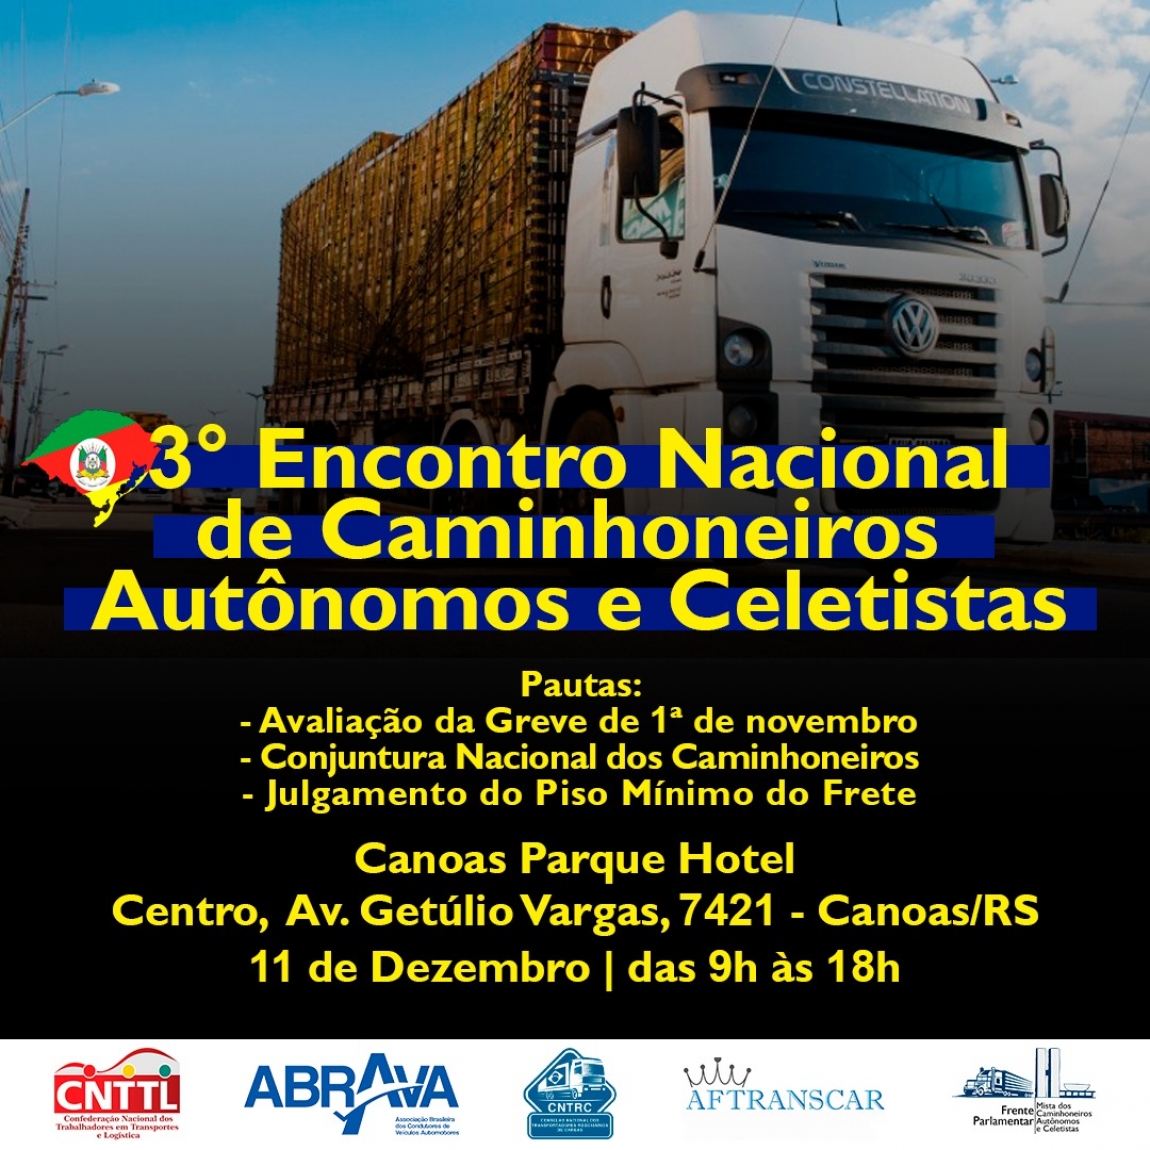 Imagem de CNTTL, ABRAVA e CNTRC realizarão 3º Encontro Nacional dos Caminhoneiros no dia 11